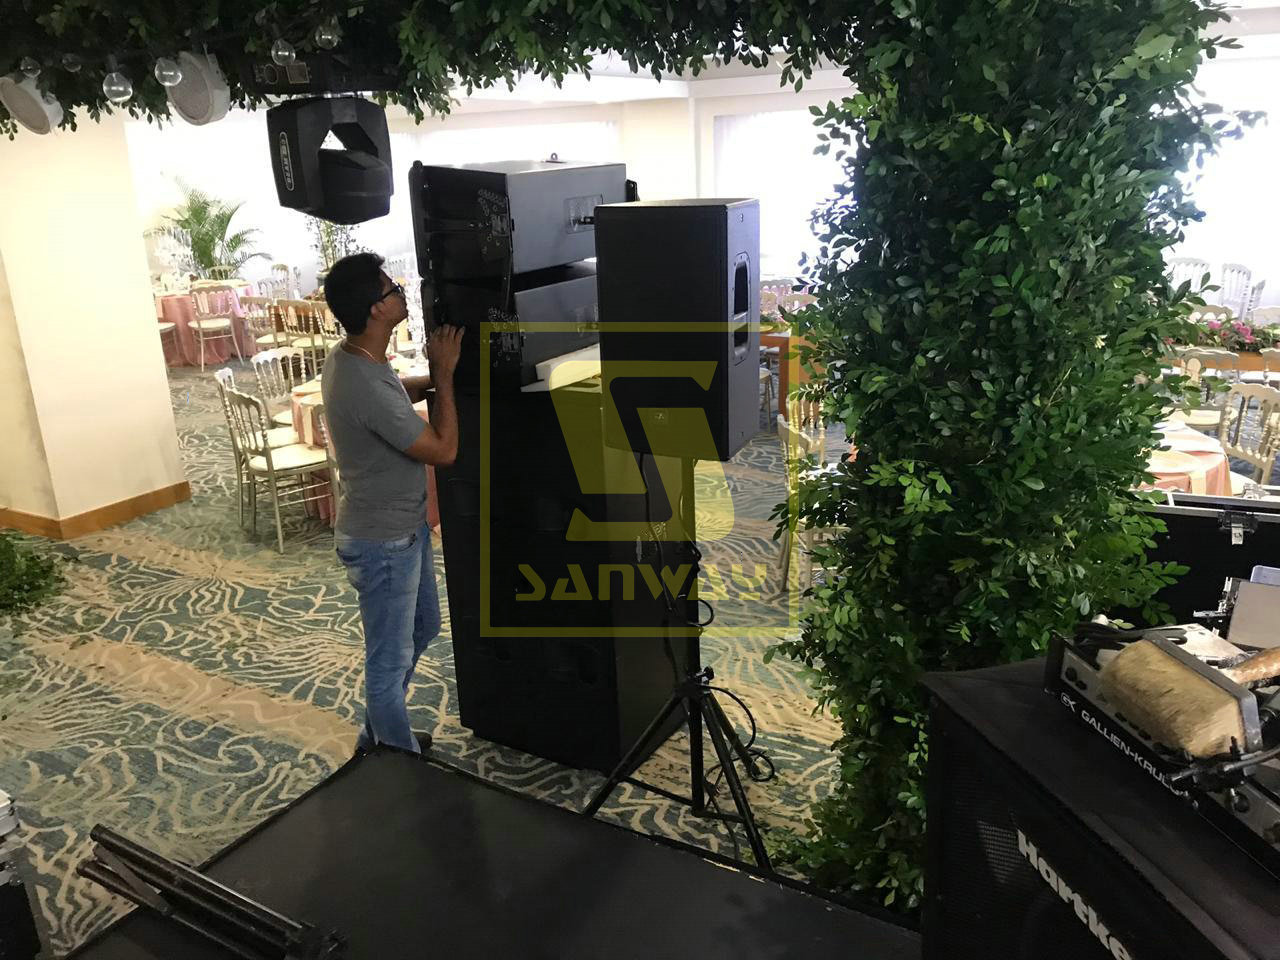 La matriz de líneas Sanway GEO S1210 y el subwoofer RS18 suministraron el evento de 500 personas